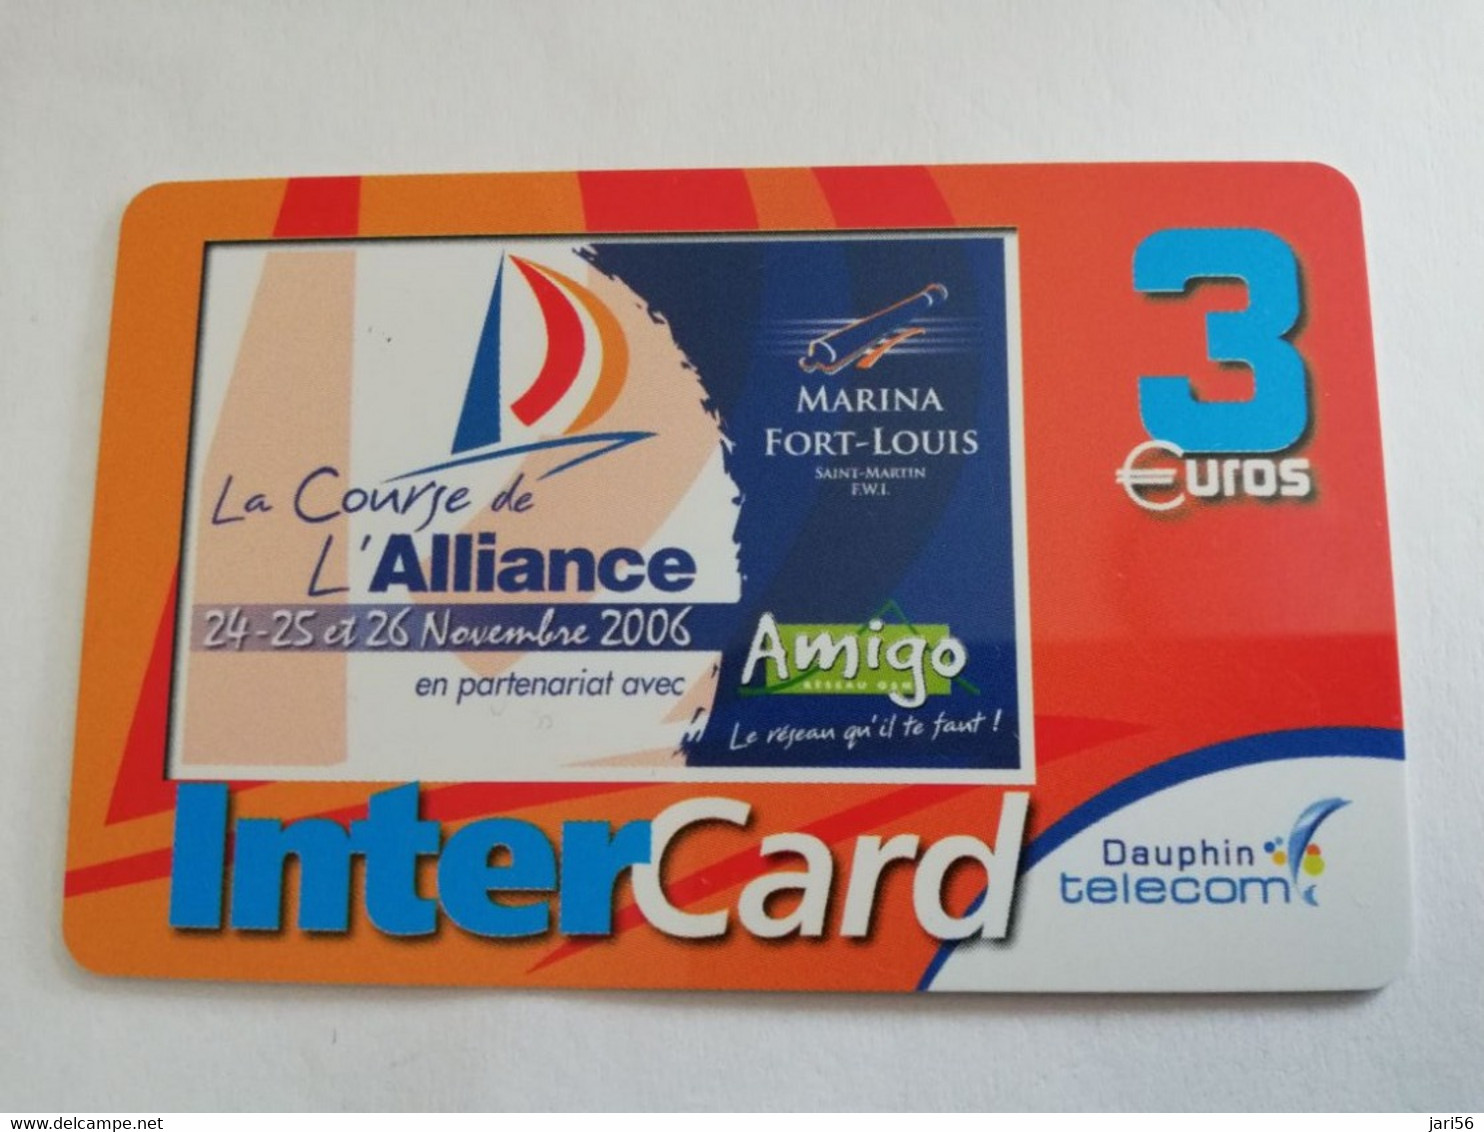 ST MARTIN / INTERCARD  3 EURO    LE COURSE DE ALLIANCE          NO 156   Fine Used Card    ** 6605 ** - Antillas (Francesas)